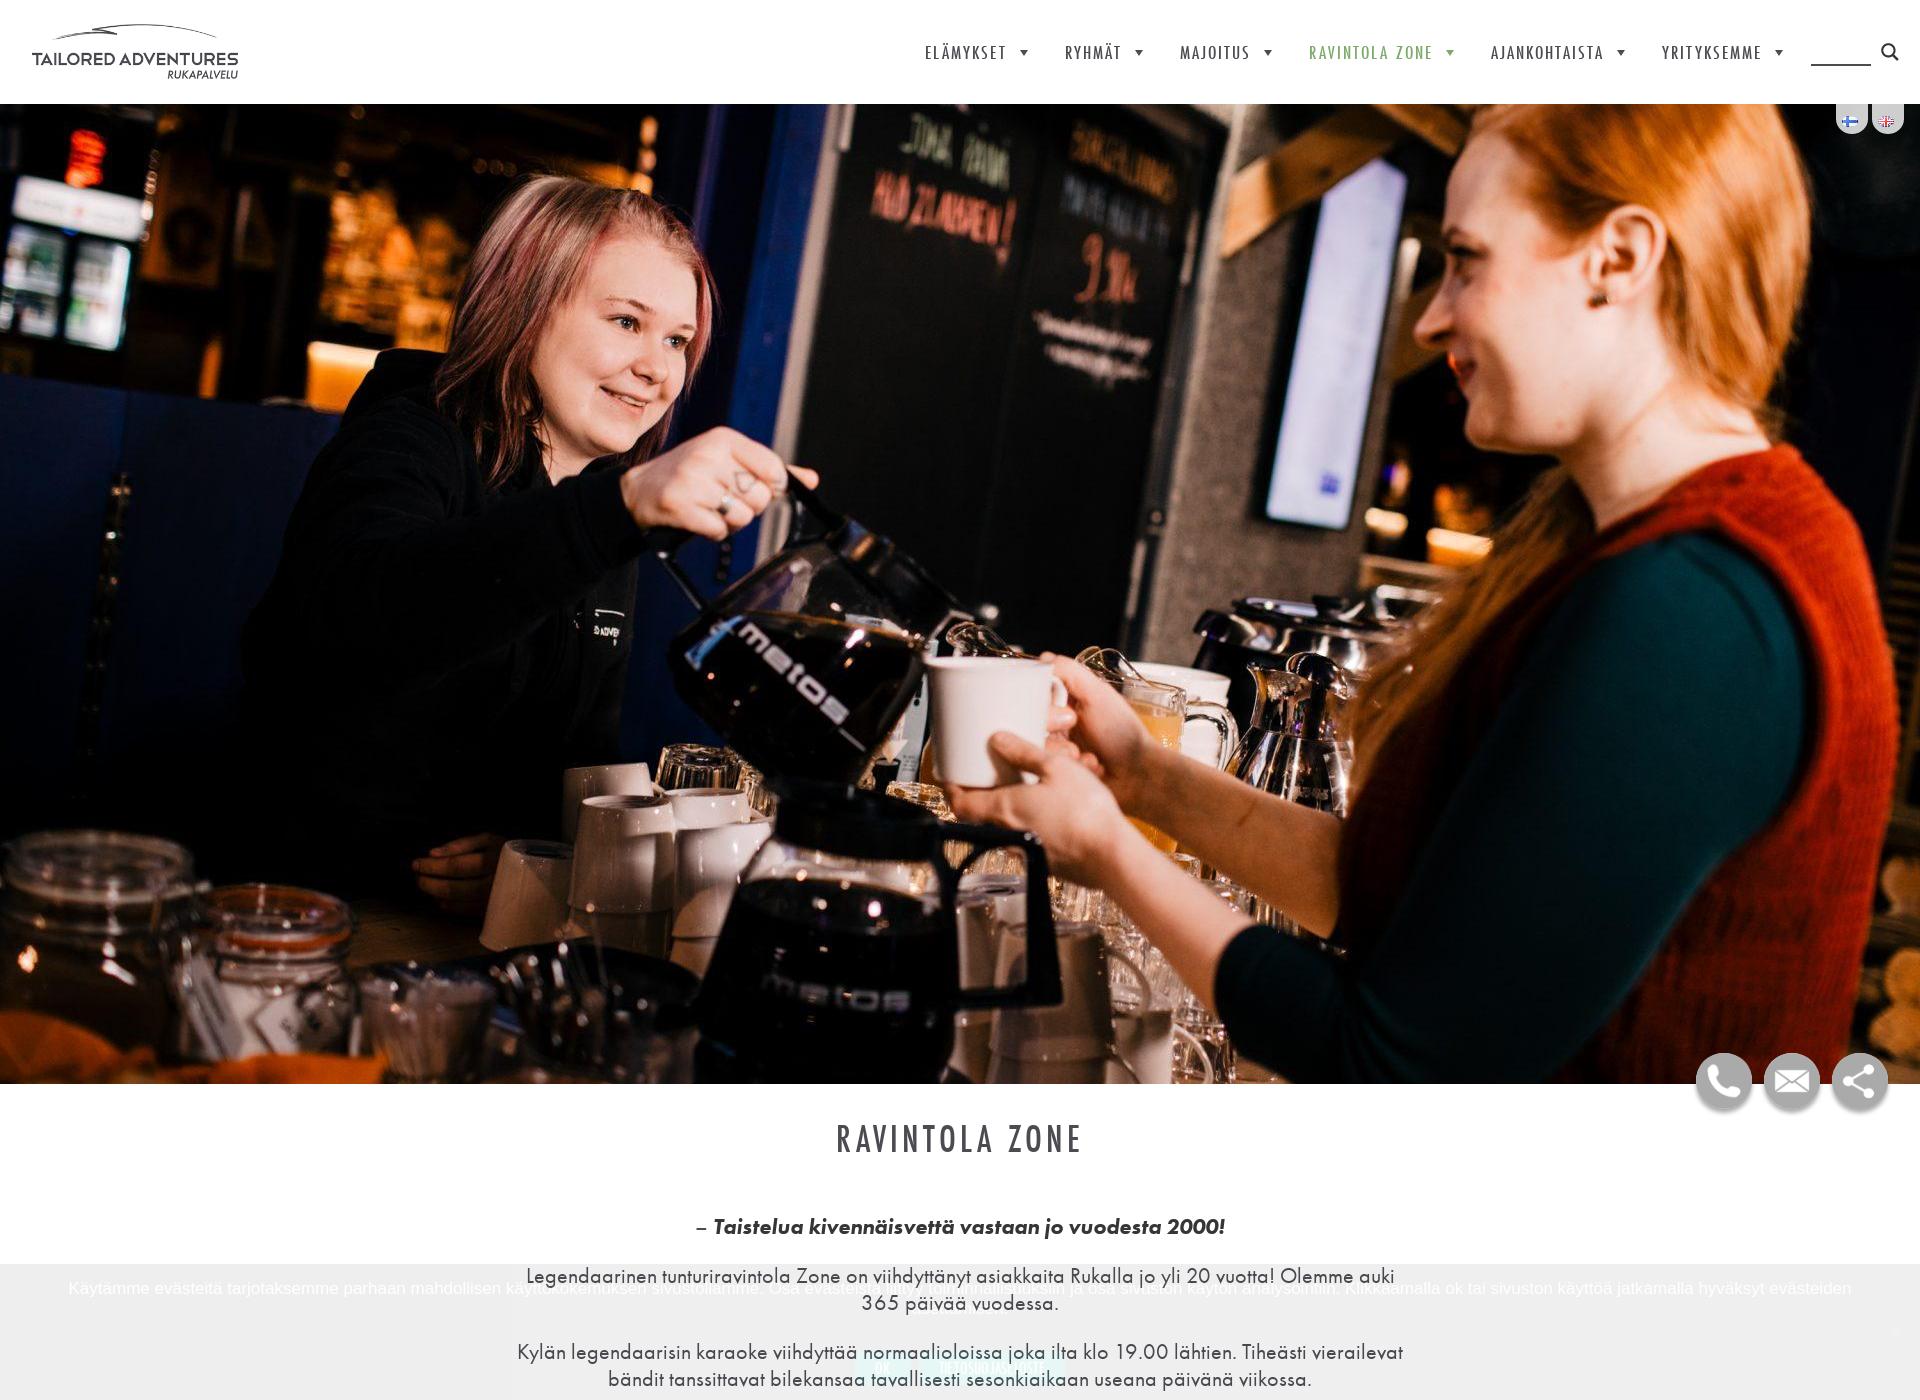 Näyttökuva ravintolazone.fi